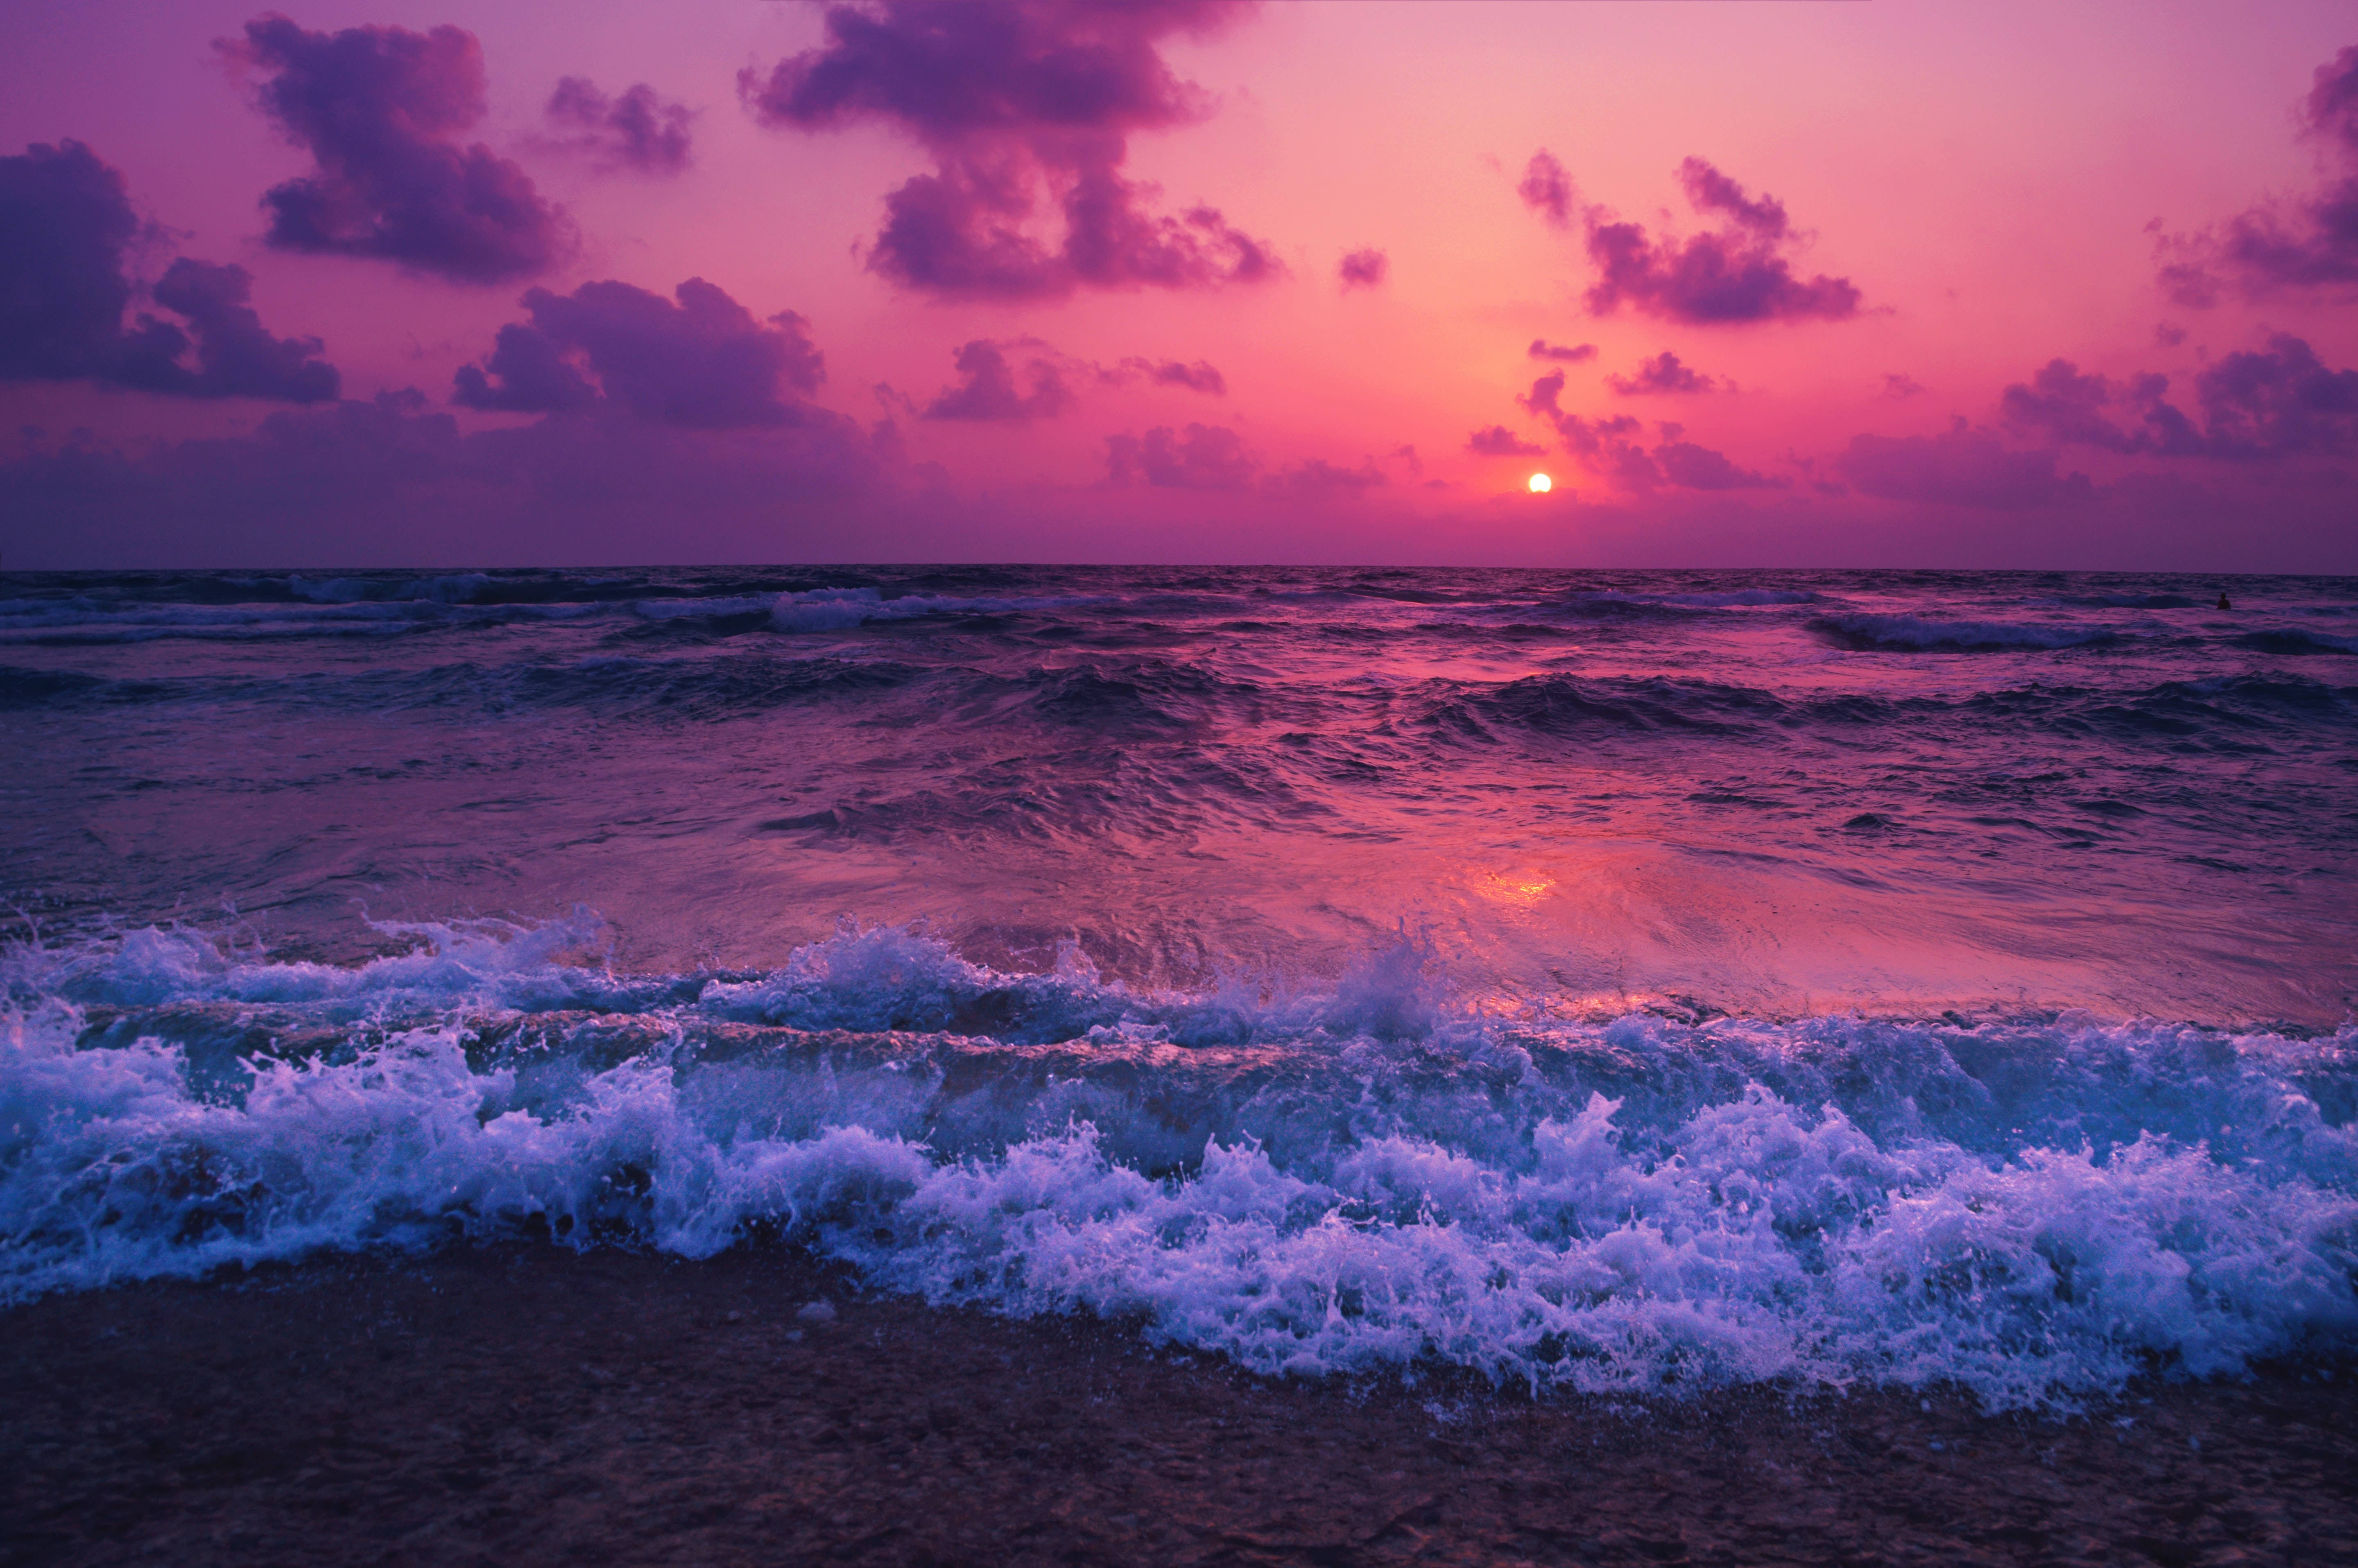 Aesthetic 1920x1080 Hd Beach Desktop Purple Sunset Foam Background